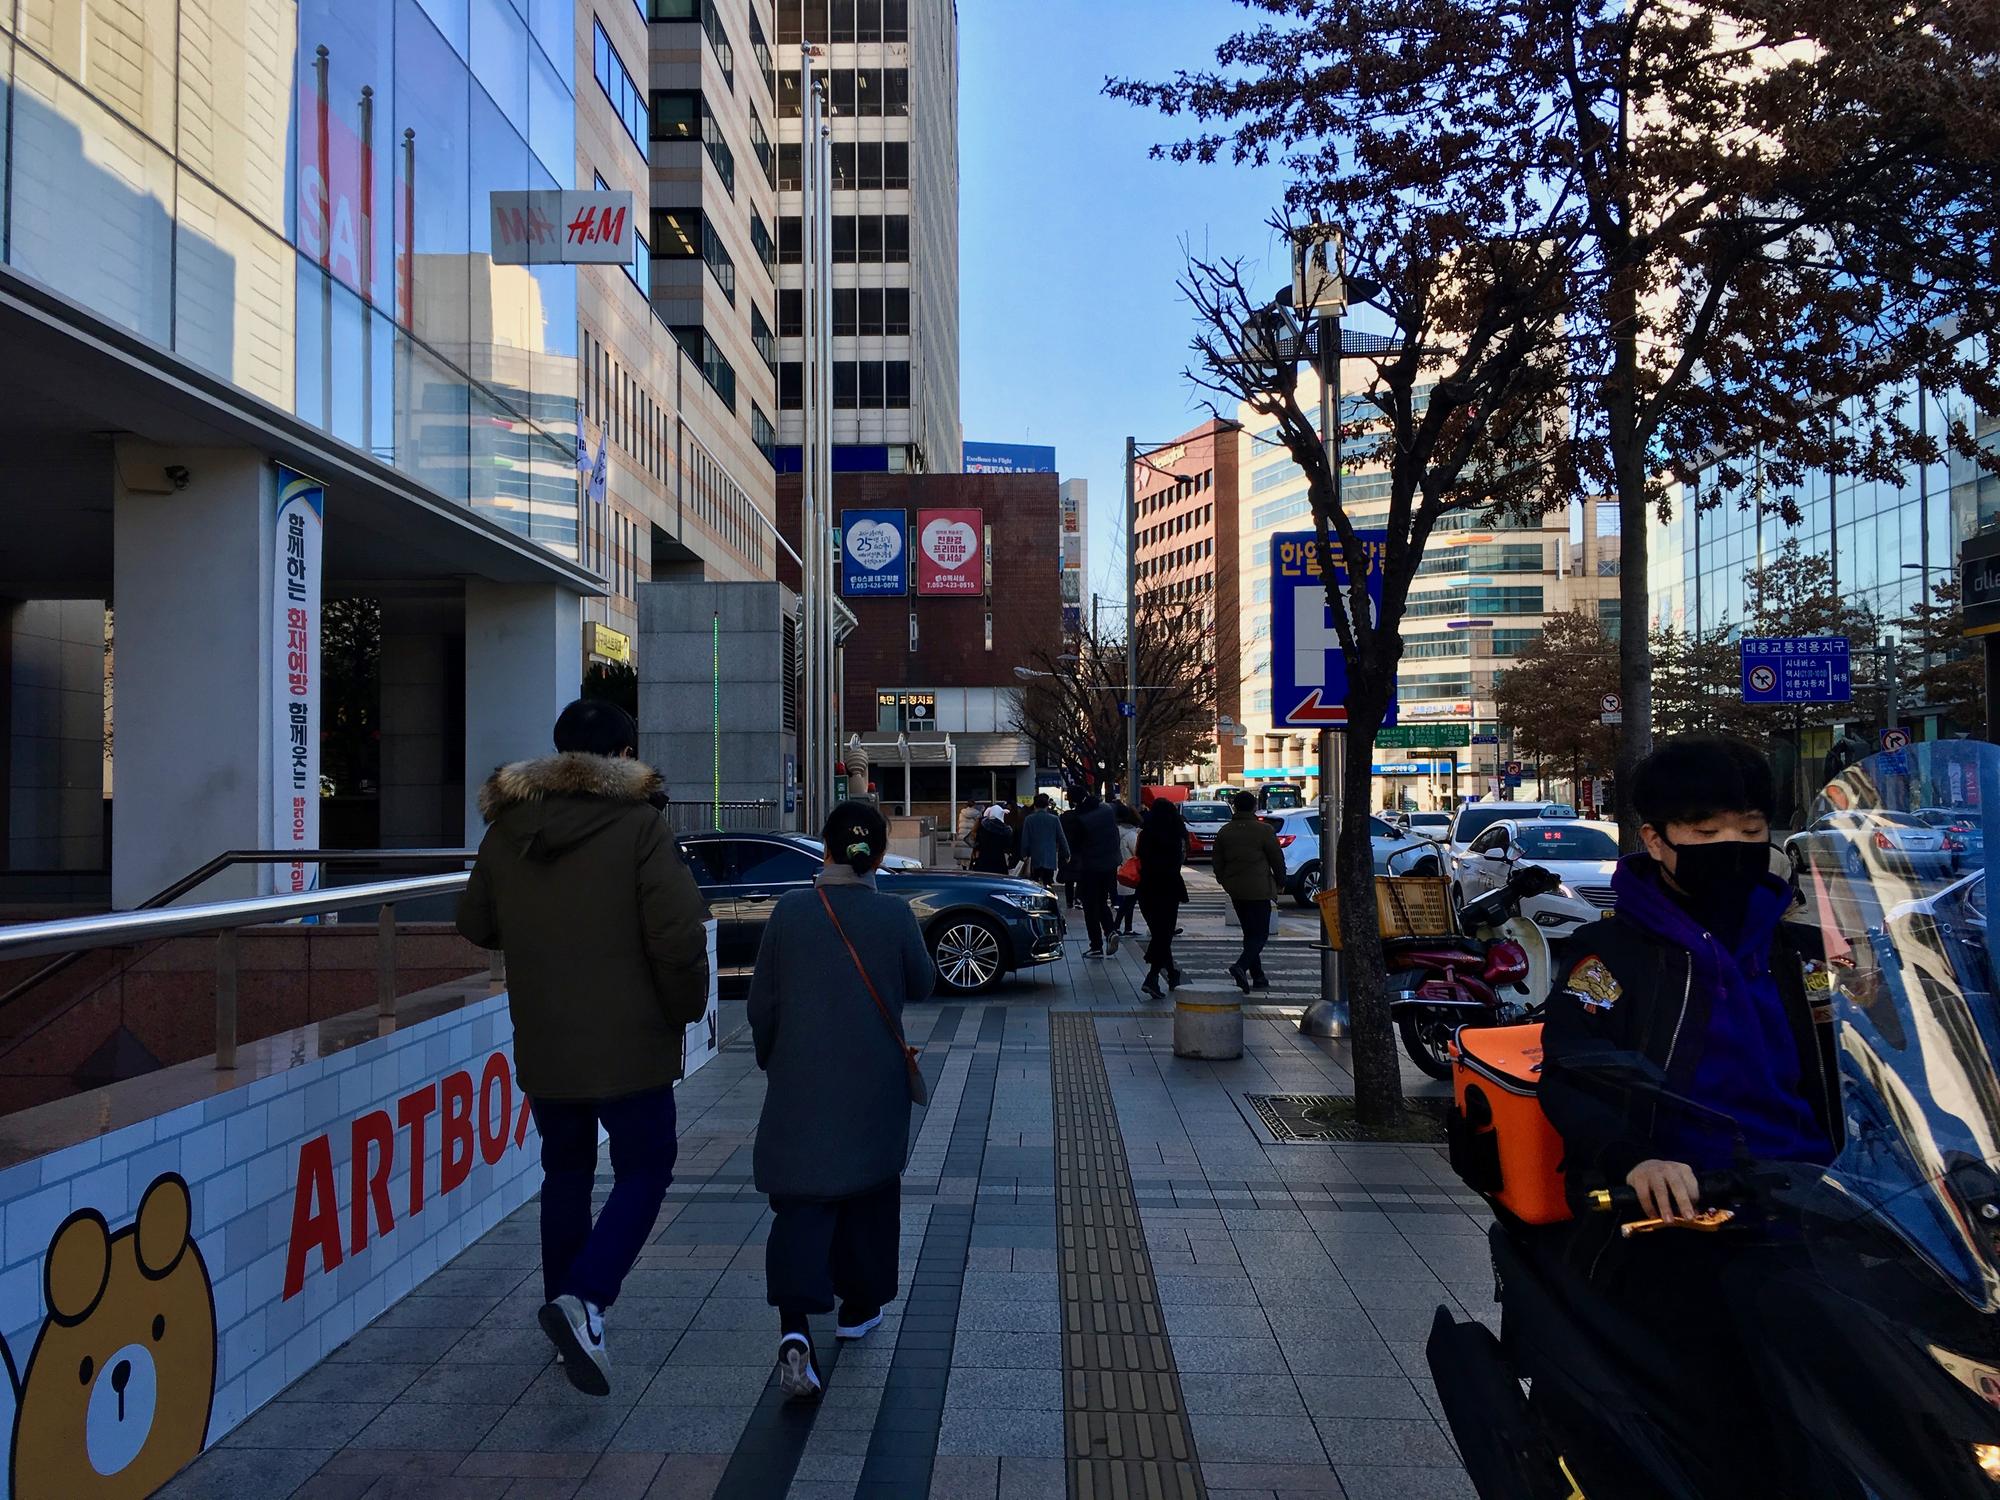 🇰🇷 Тэгу, Южная Корея, январь 2019.